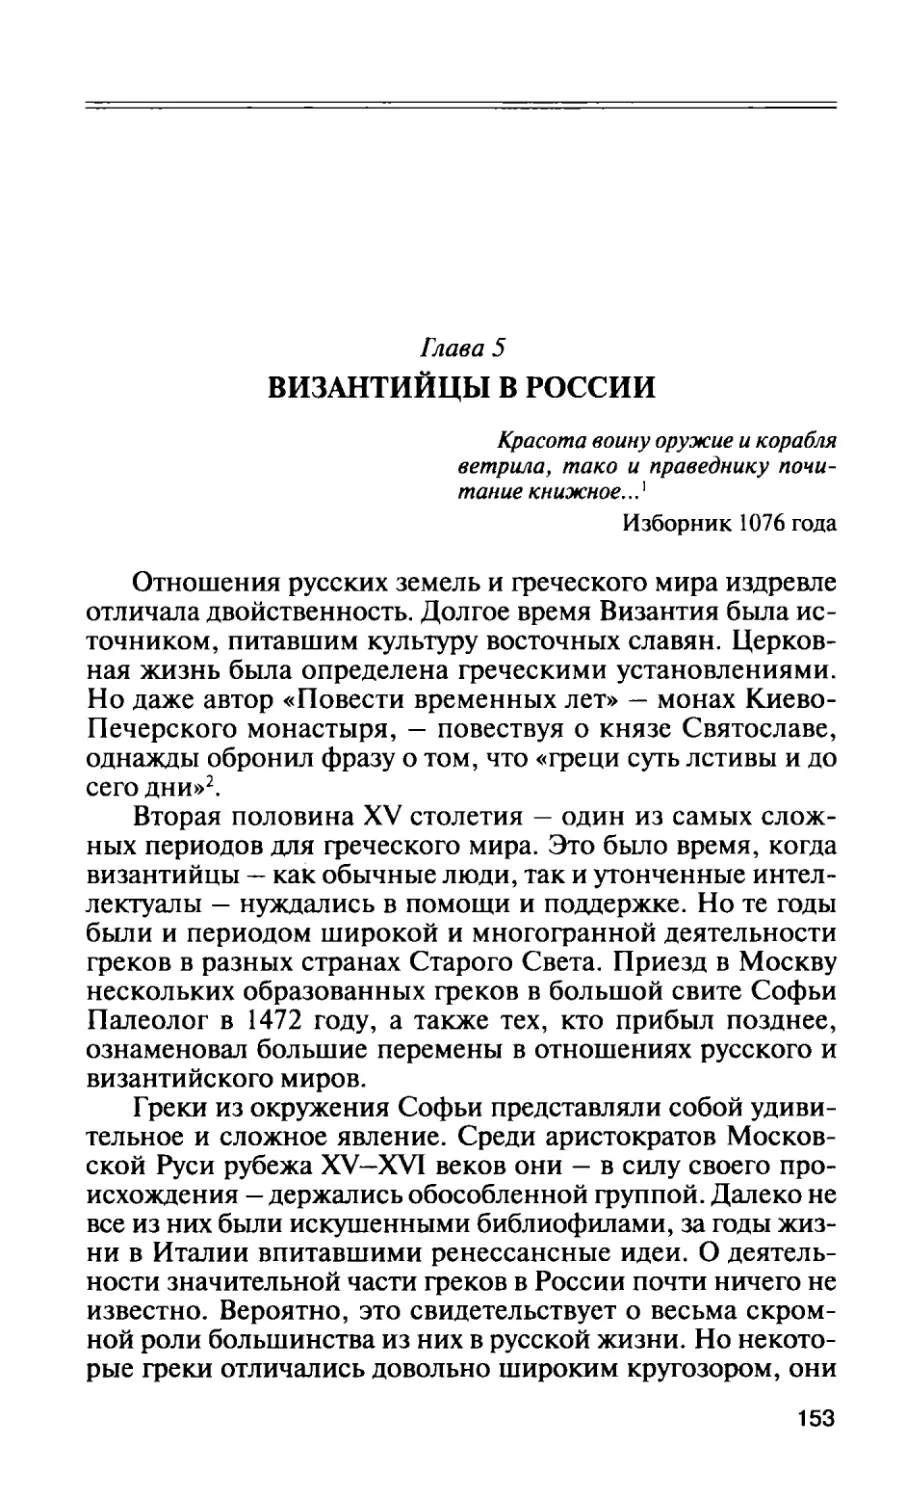 Глава 5. Византийцы в России